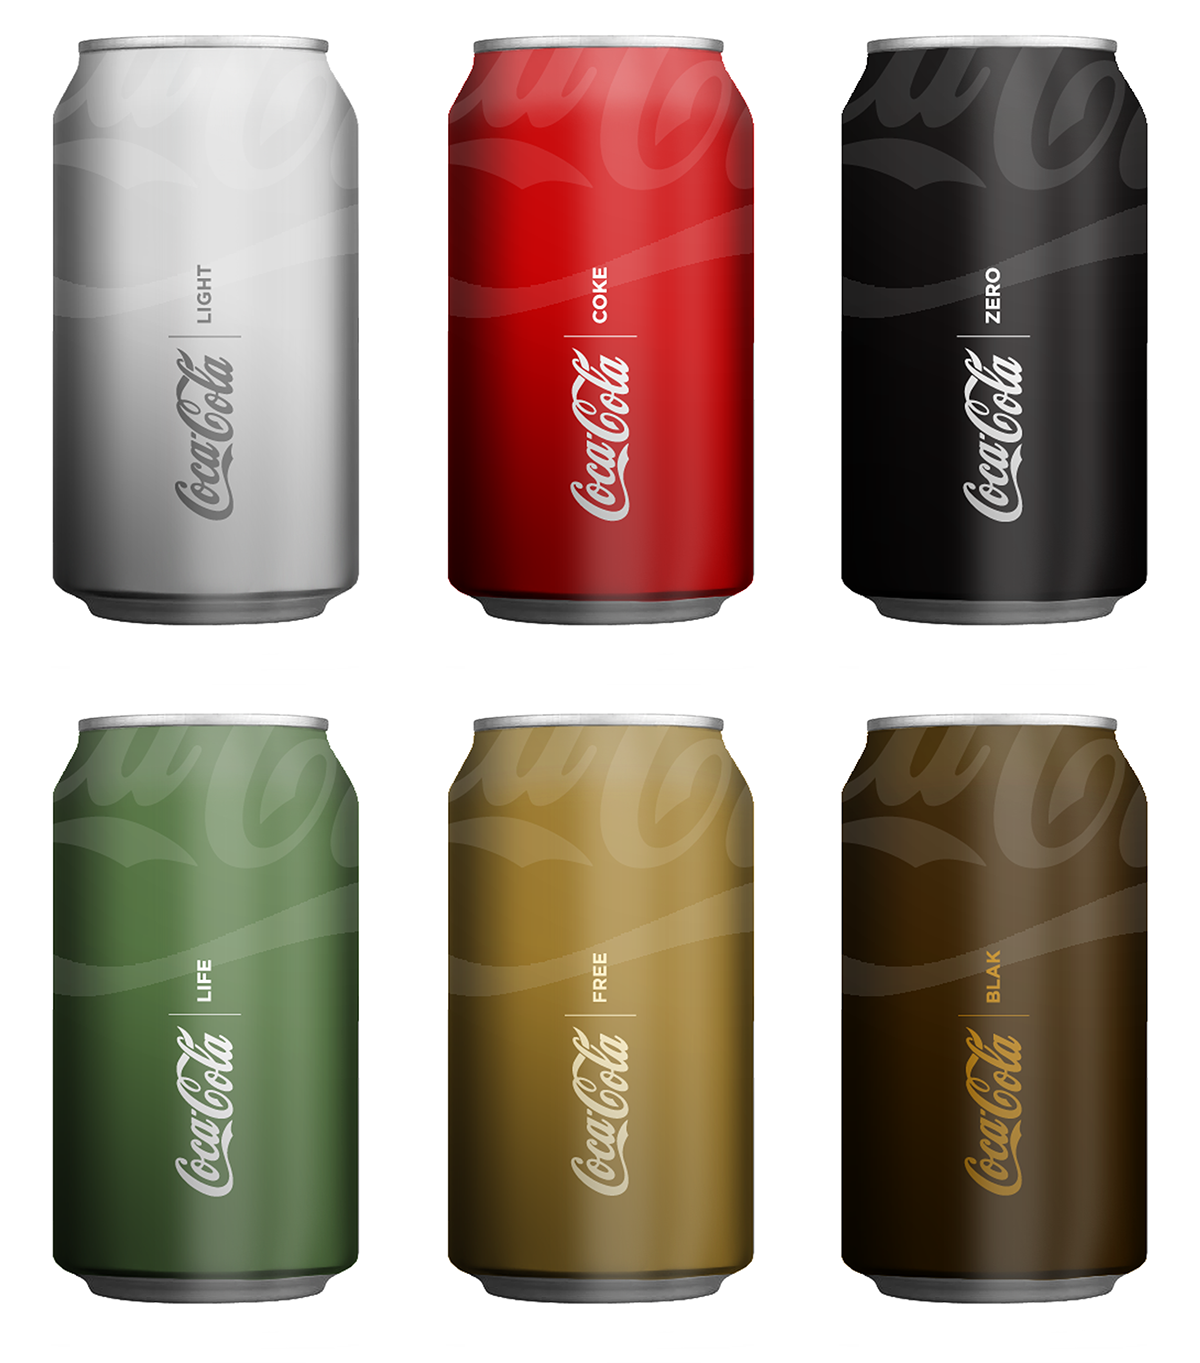 cocacola alejo malia brand rebranding logo